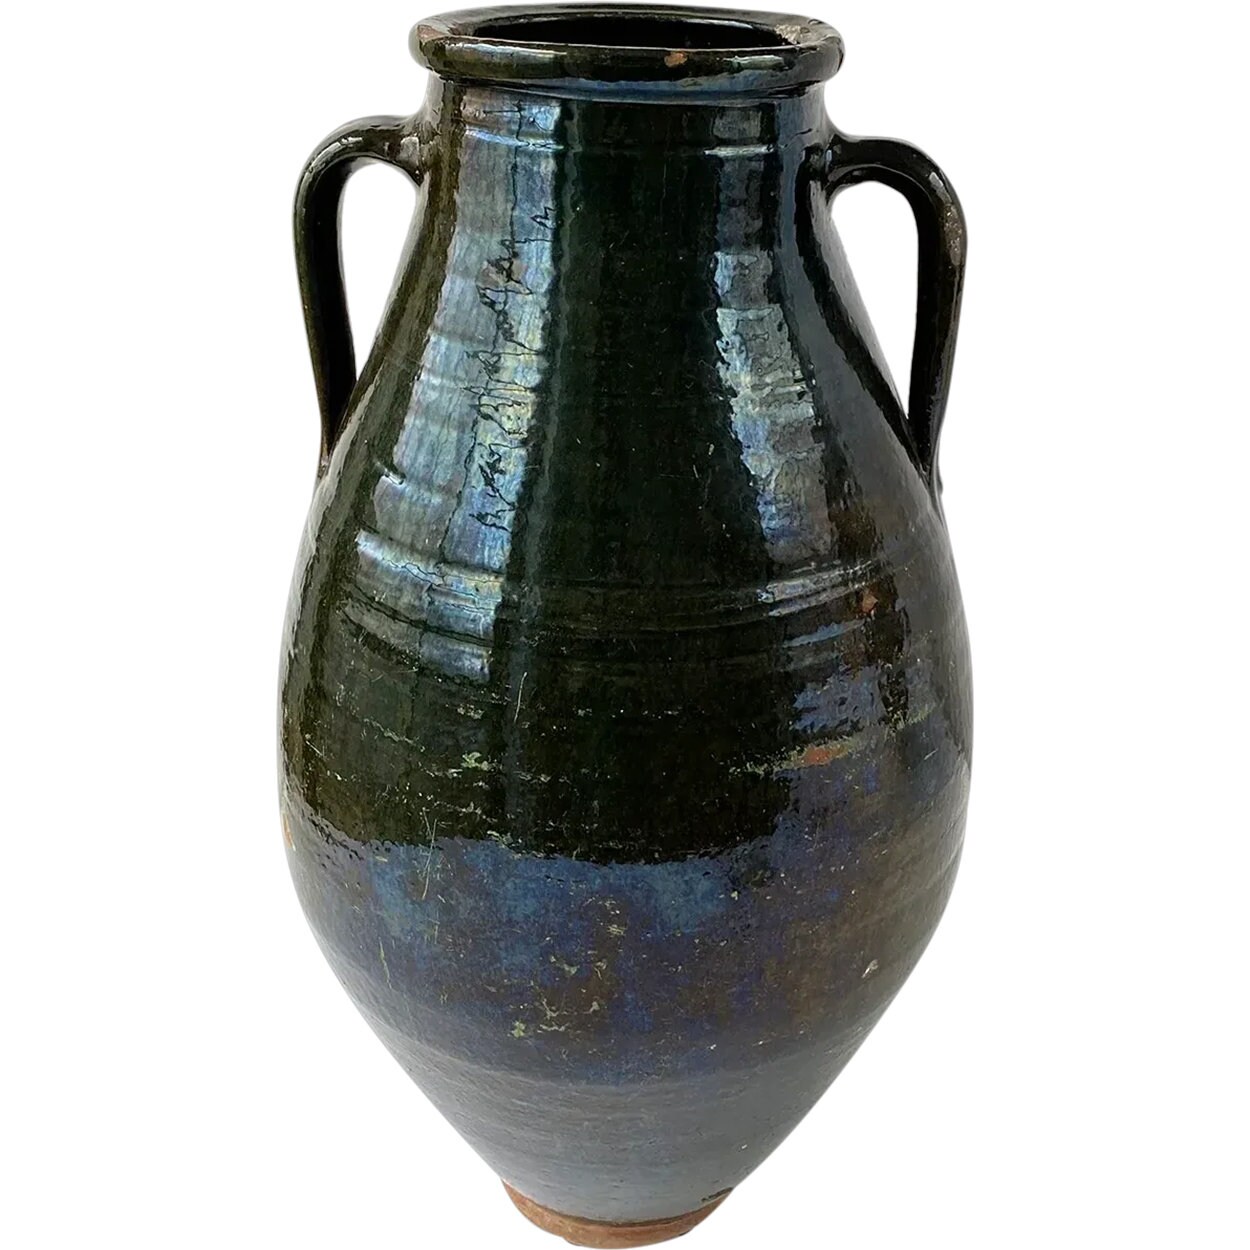 Vintage Turkish Double Handled Olive Oil Jar - Large – The Voyage Home